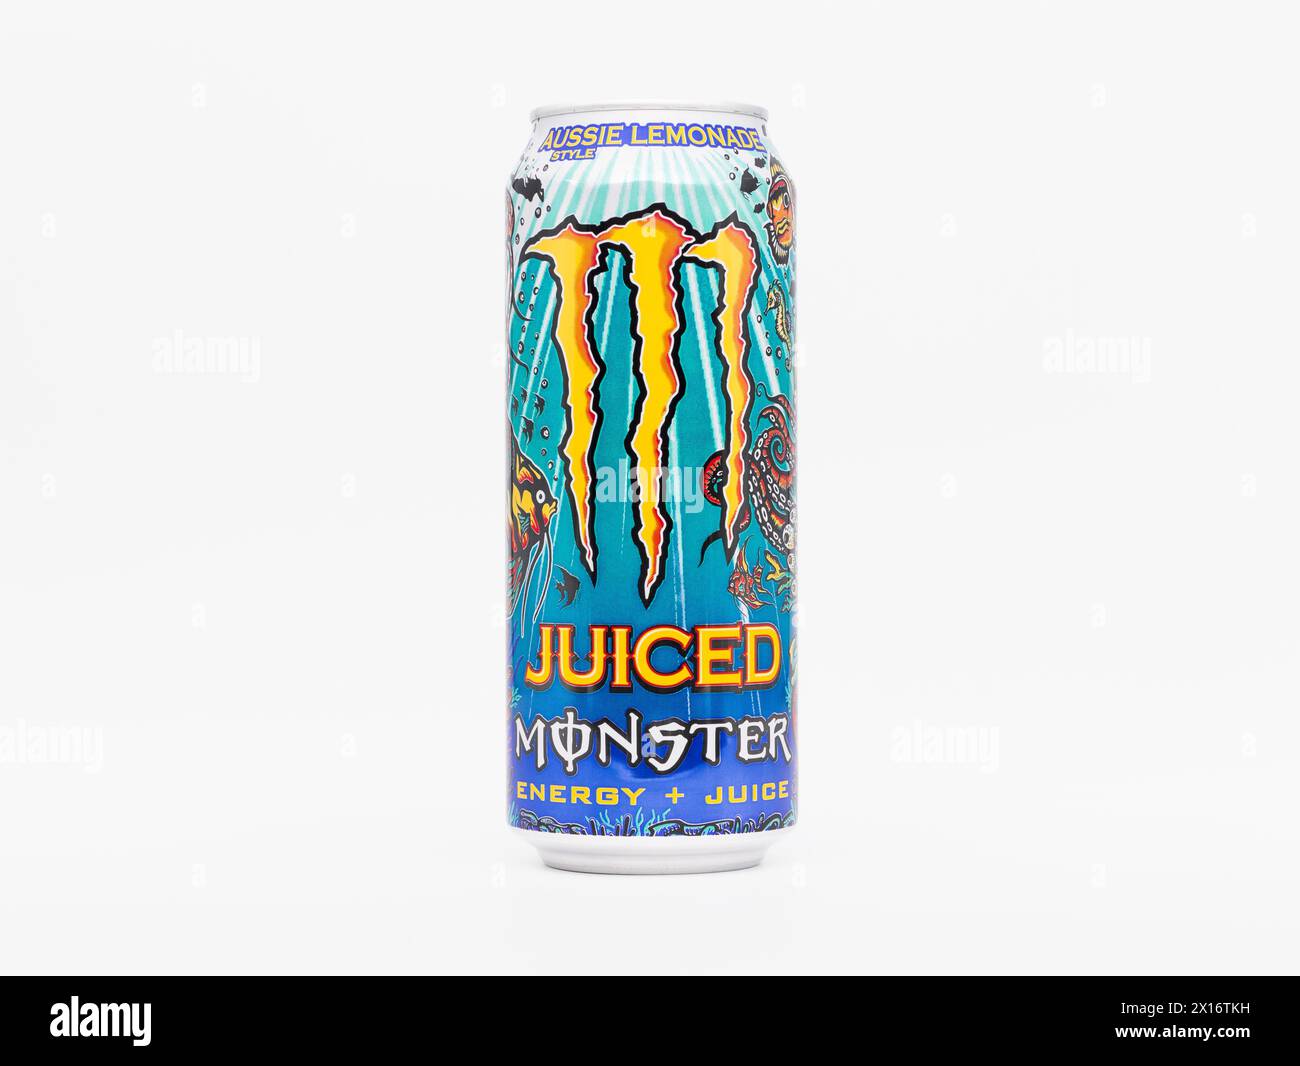 Monster Energy Aussie Lemonade Juiced Beverage. La lattina ha un design subacqueo con l'iconico artiglio di colore giallo. La bevanda ha un sapore di agrumi. Foto Stock